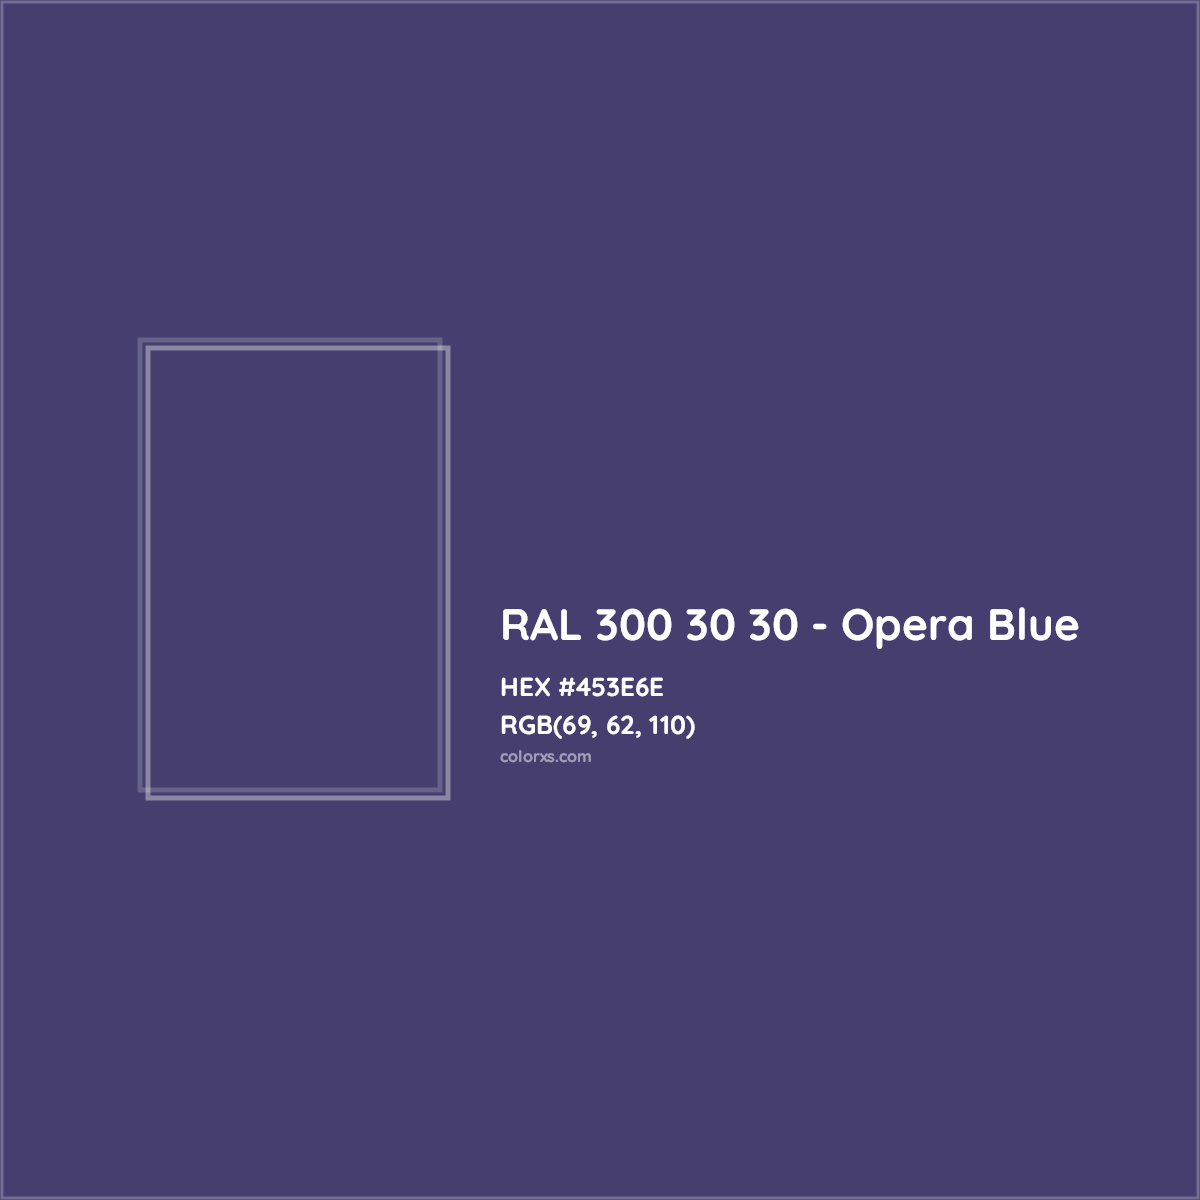 HEX #453E6E RAL 300 30 30 - Opera Blue CMS RAL Design - Color Code